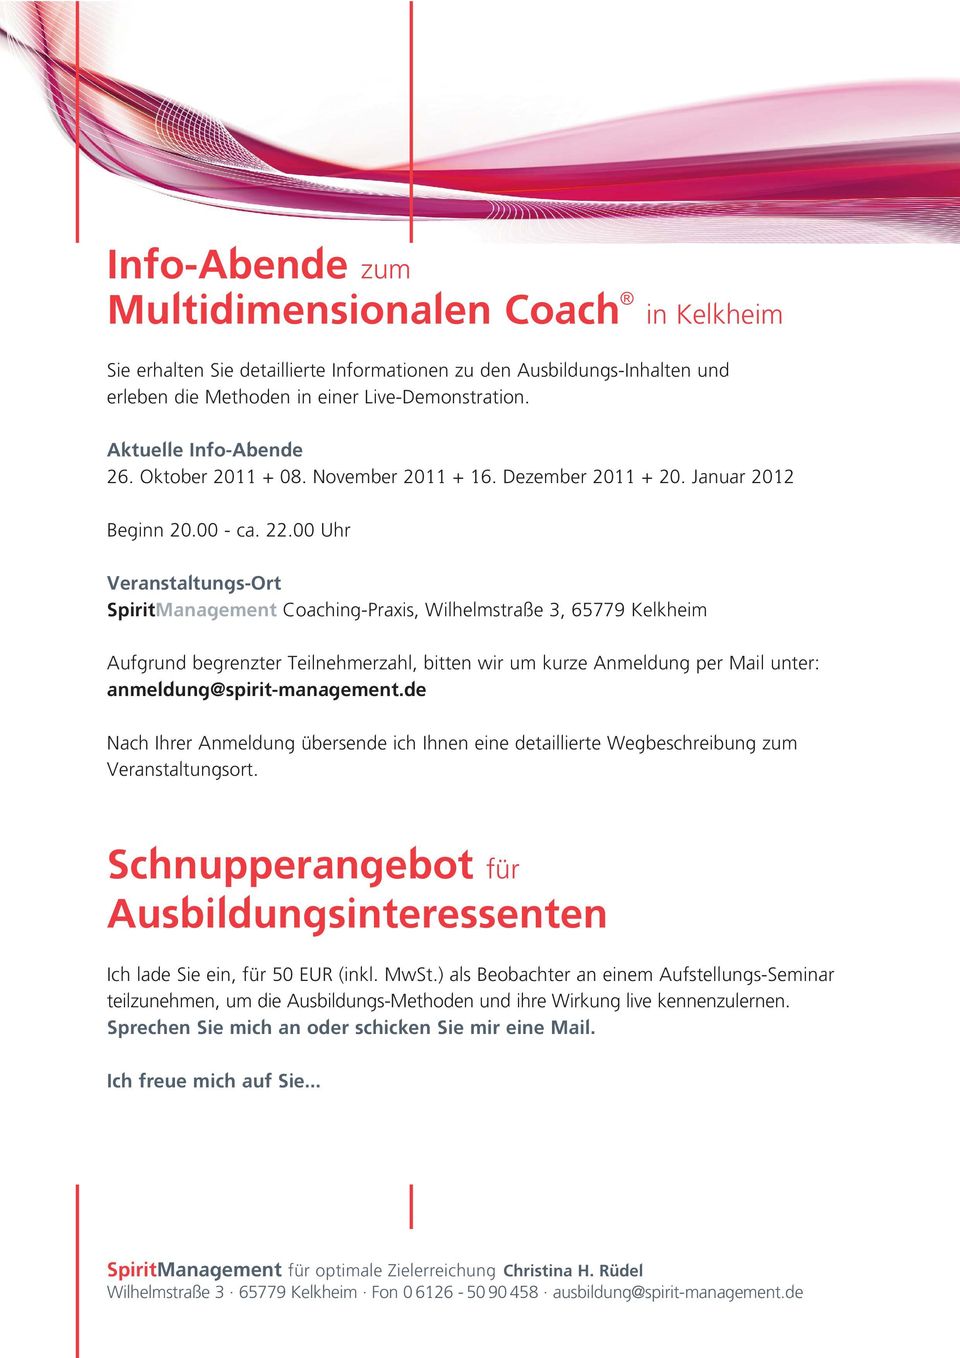 00 Uhr Veranstaltungs-Ort SpiritManagement Coaching-Praxis, Wilhelmstraße 3, 65779 Kelkheim Aufgrund begrenzter Teilnehmerzahl, bitten wir um kurze Anmeldung per Mail unter: